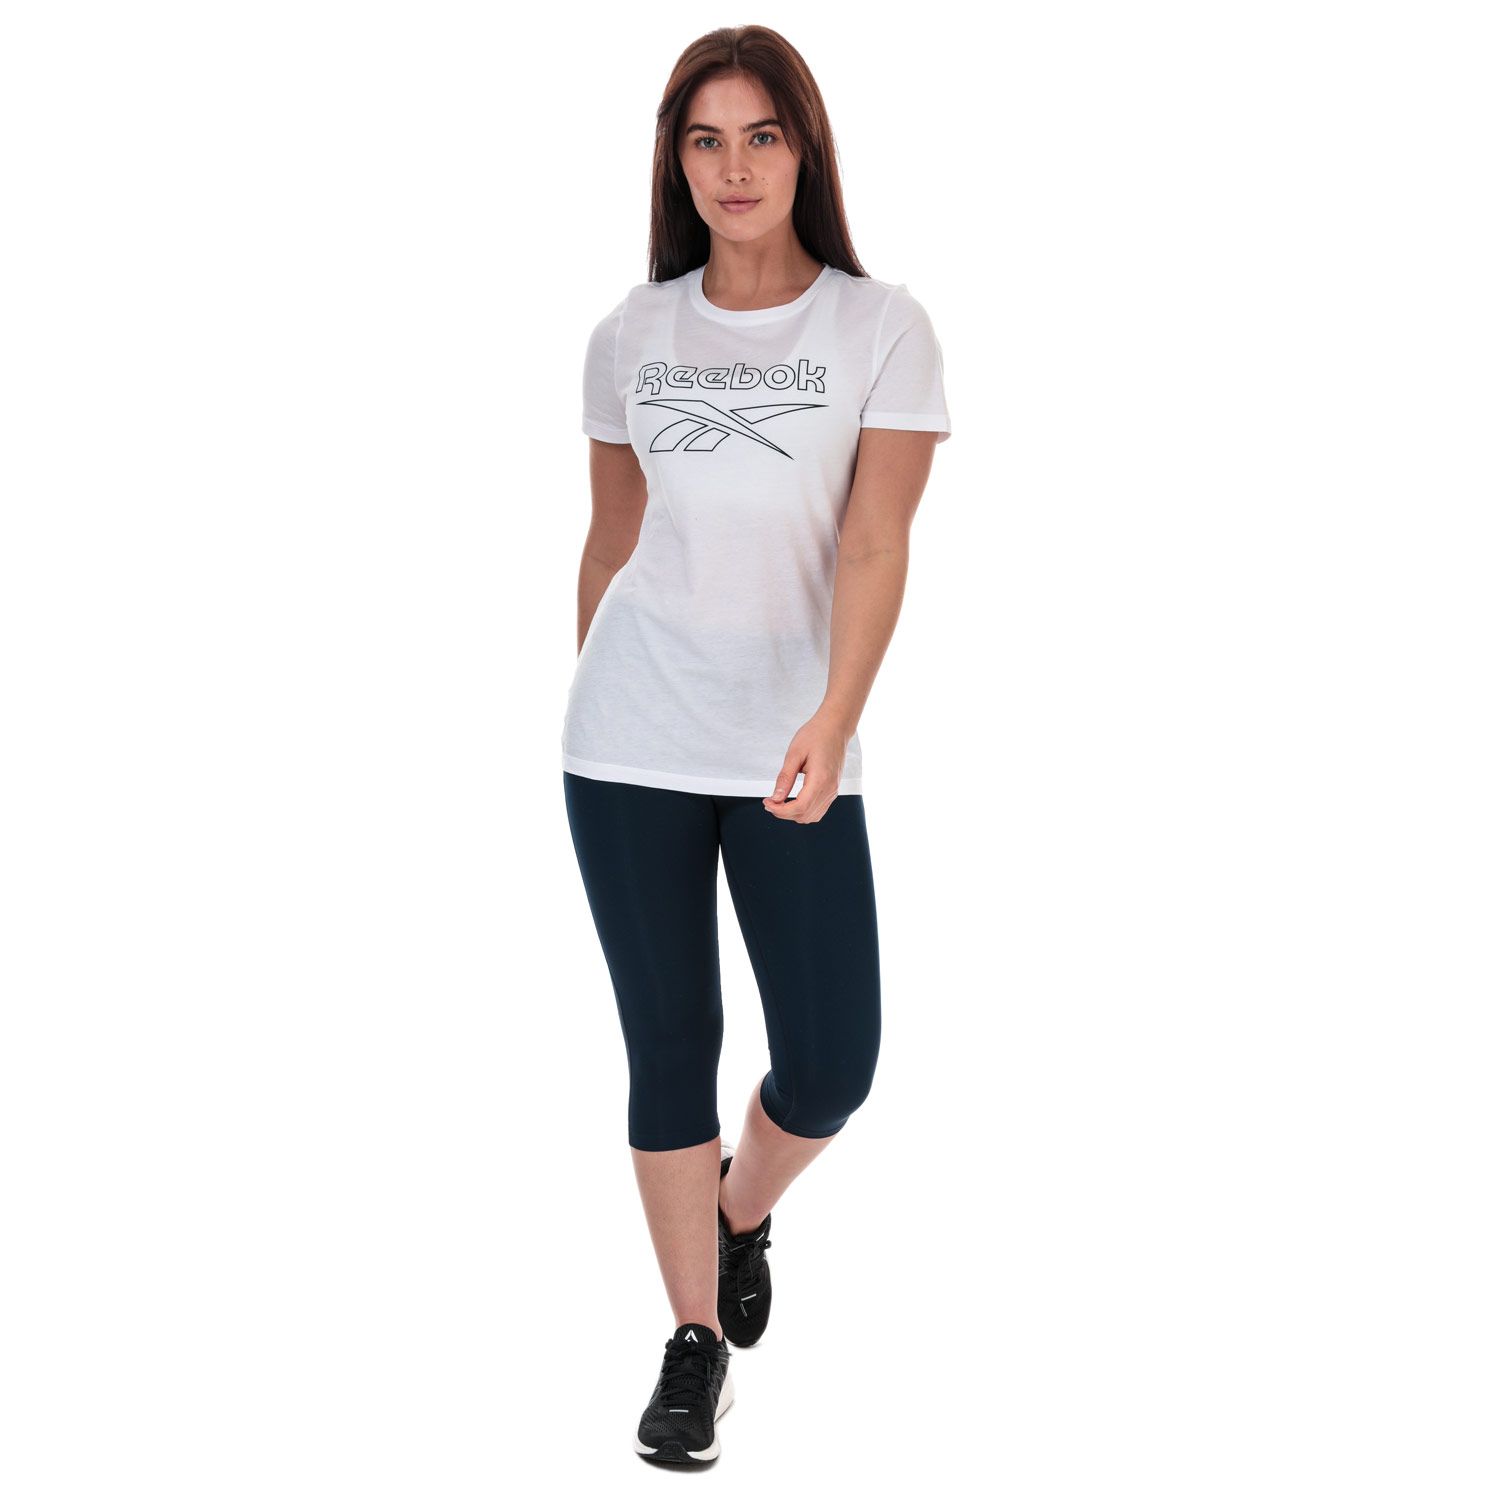 Women's Reebok Activewear, Leggings & T-shirts